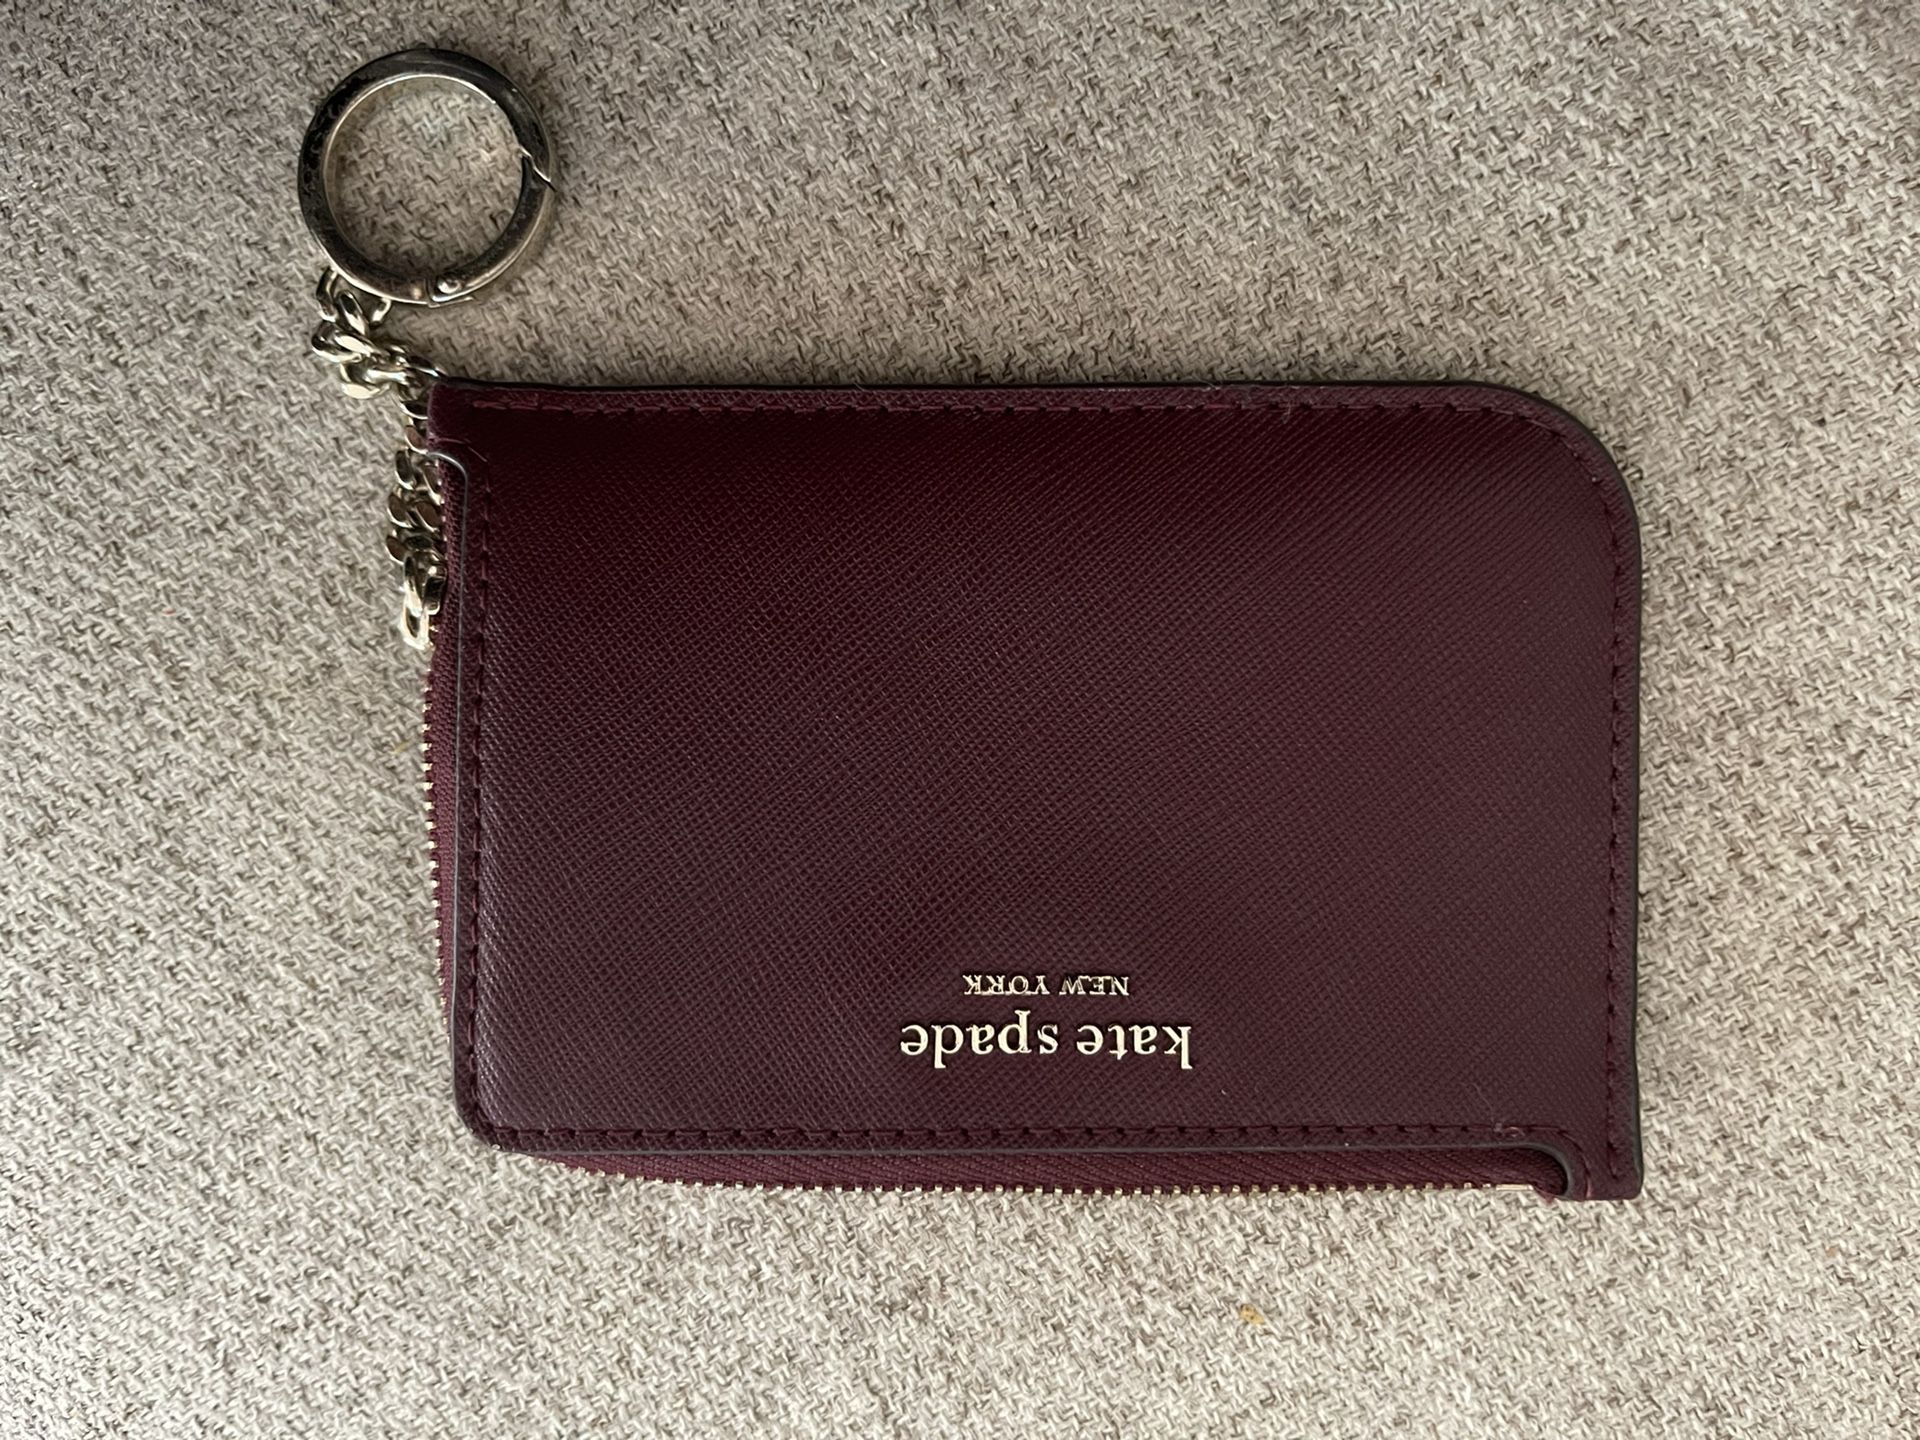 Kate Spade Card Holder /wallet 